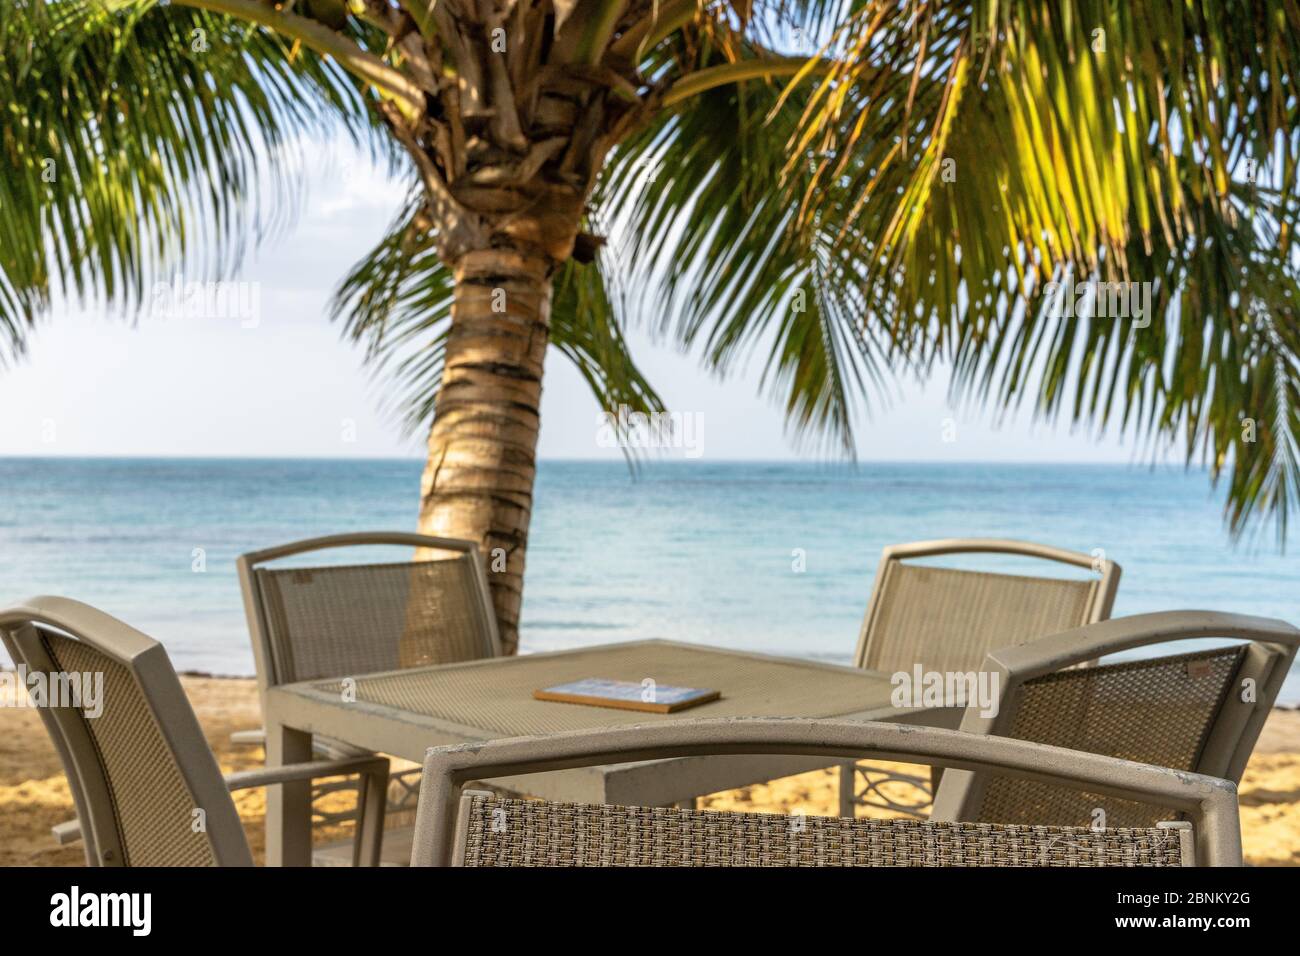 Amérique, Caraïbes, grandes Antilles, République dominicaine, Samaná, Las Terrenas, bar de plage avec vue sur la mer des Caraïbes Banque D'Images